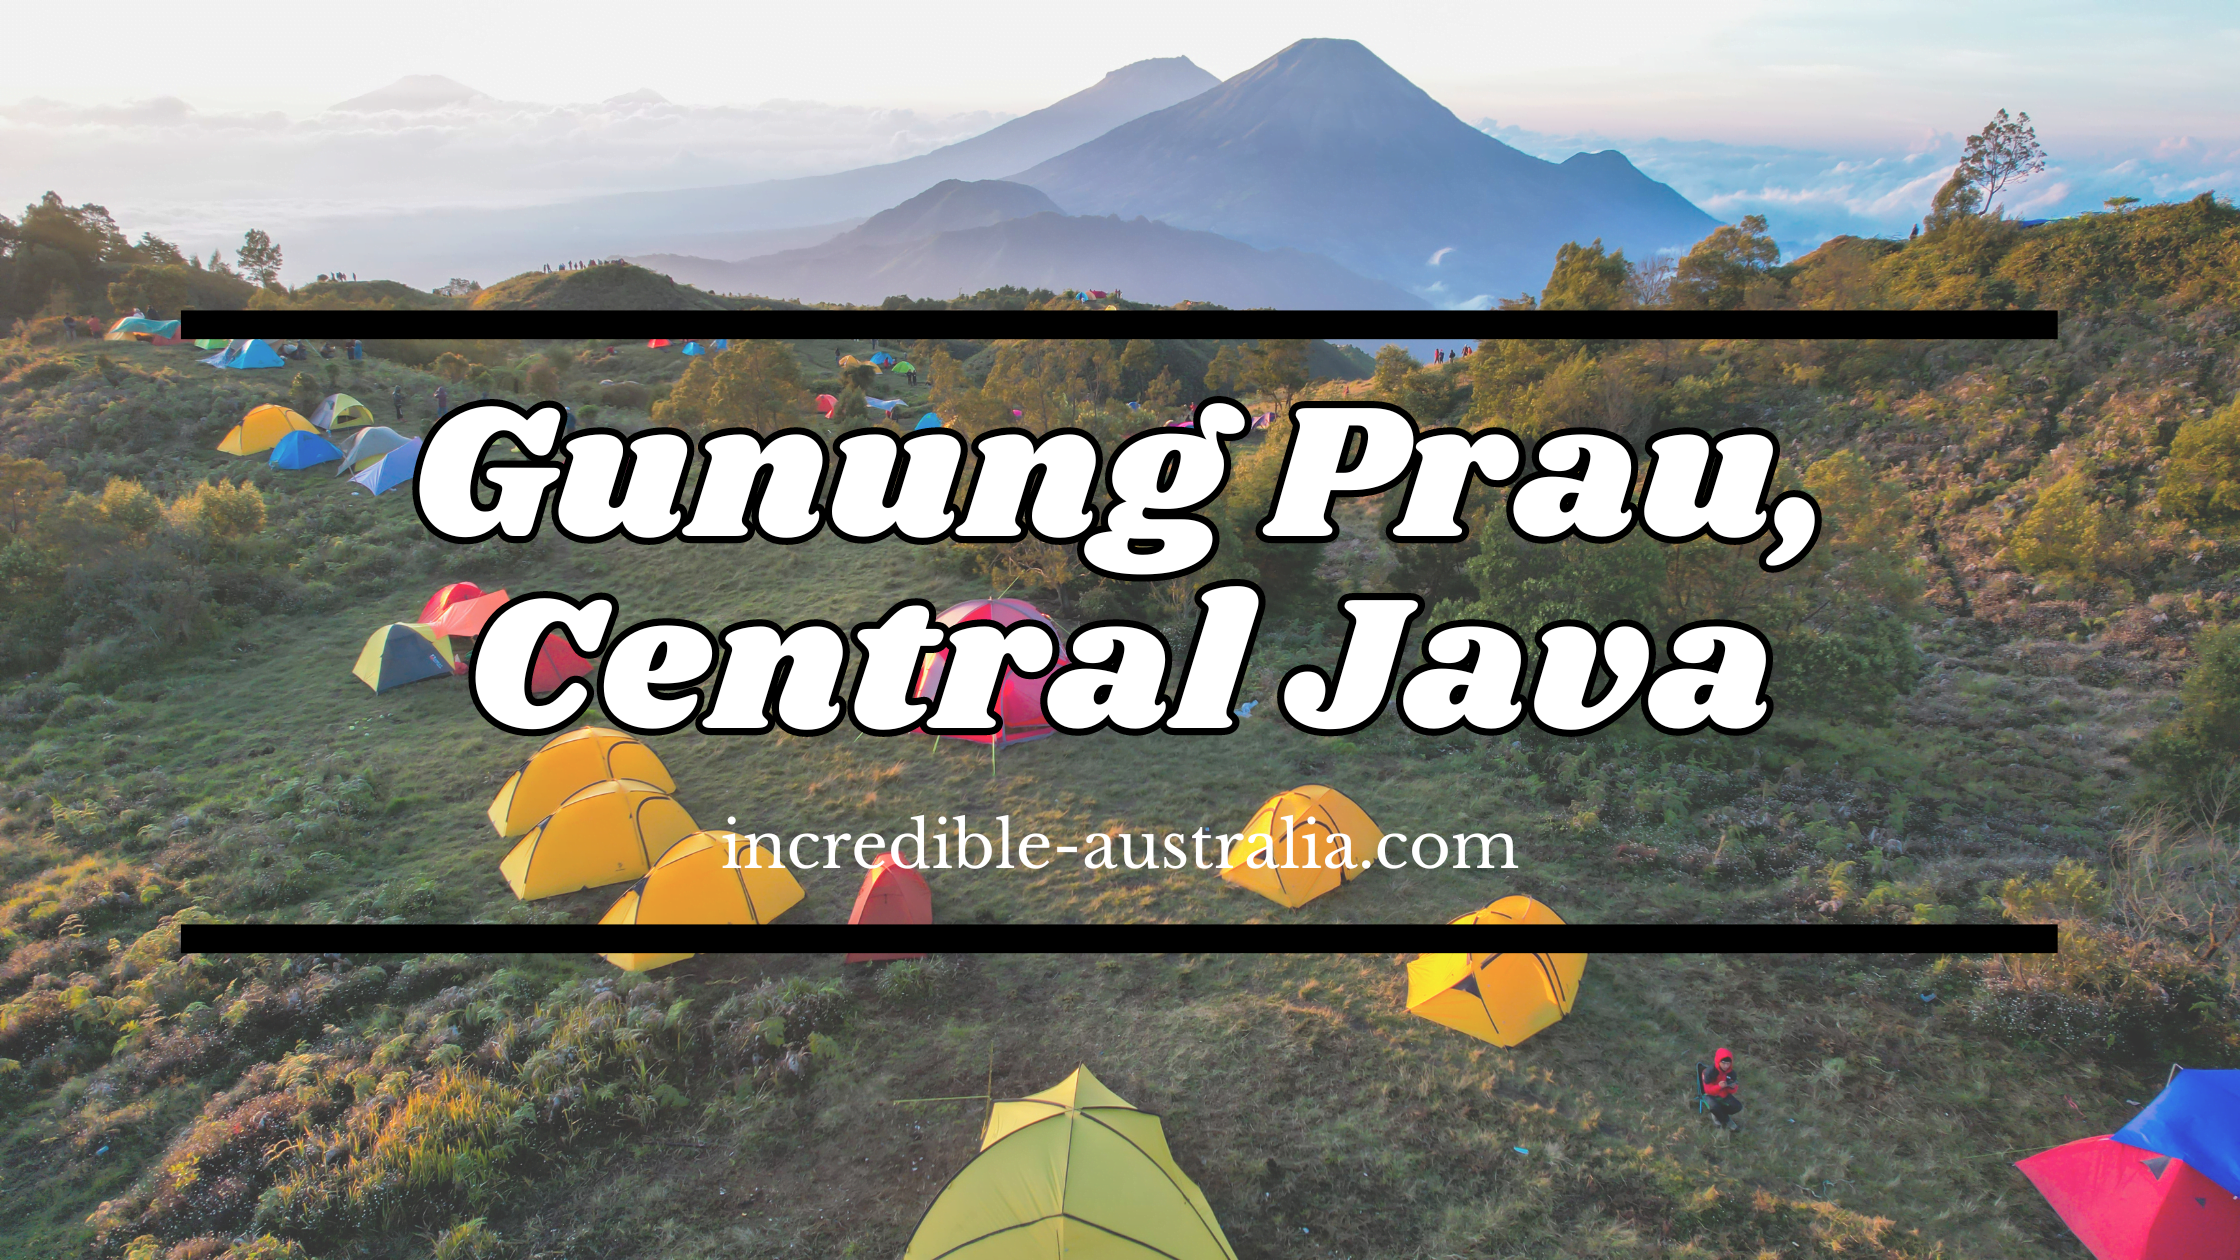 Gunung Prau, Central Java